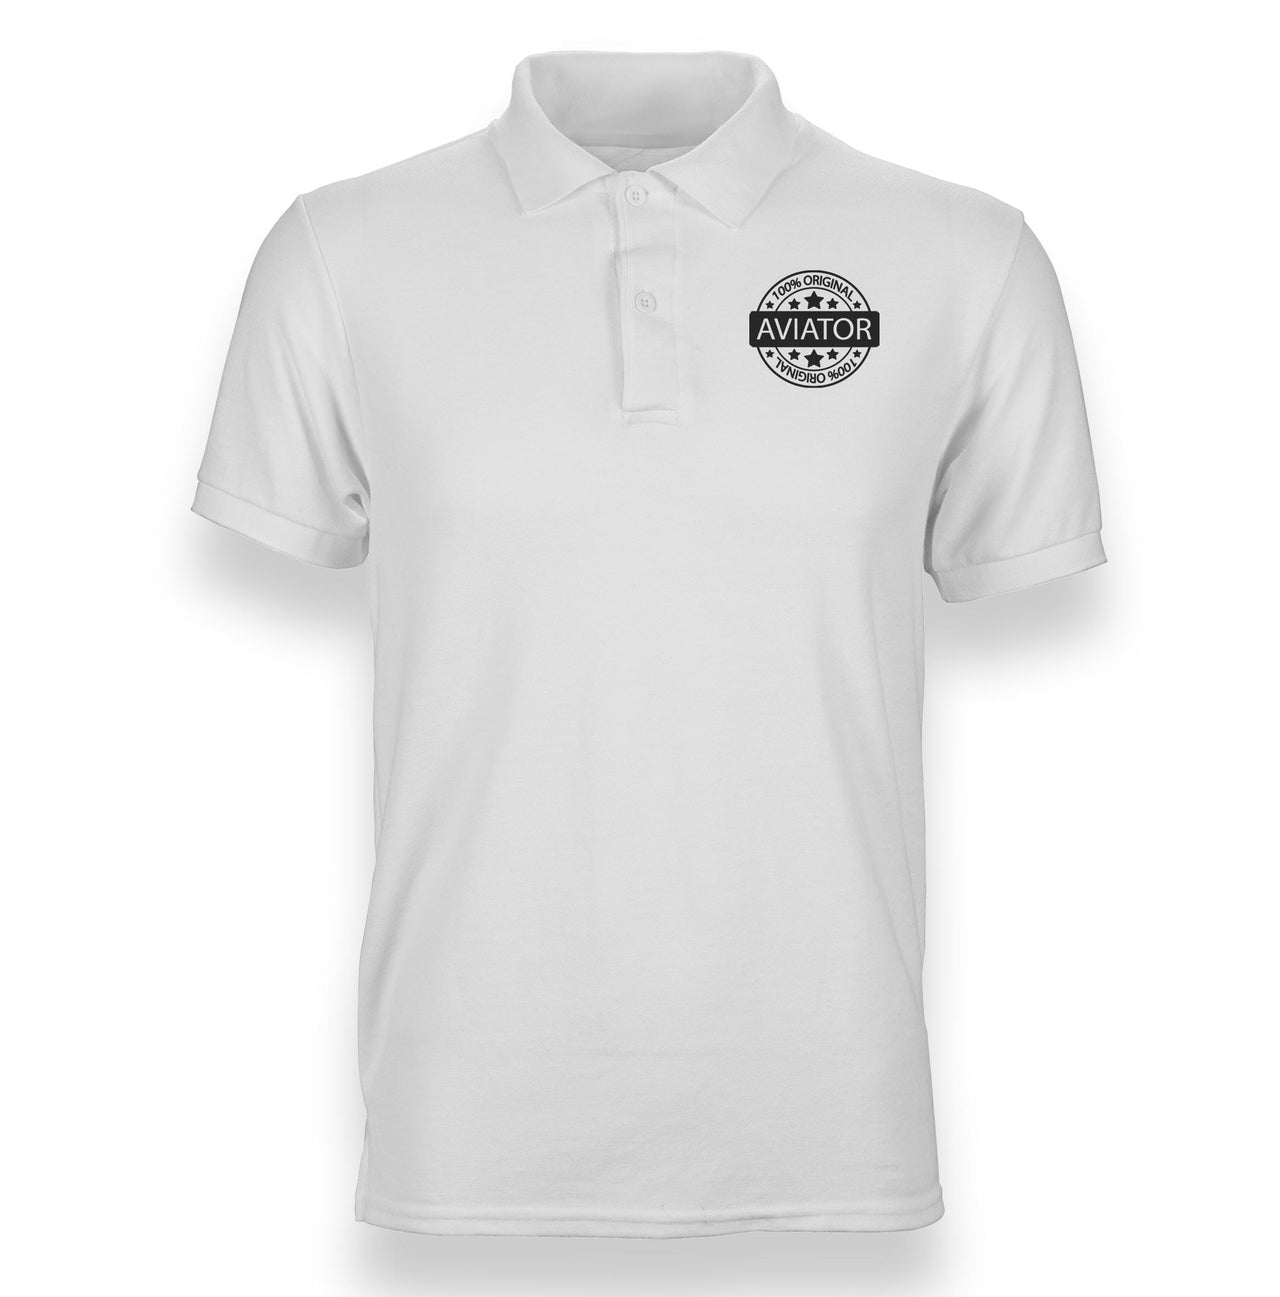 %100 Original Aviator Designed Polo T-Shirts